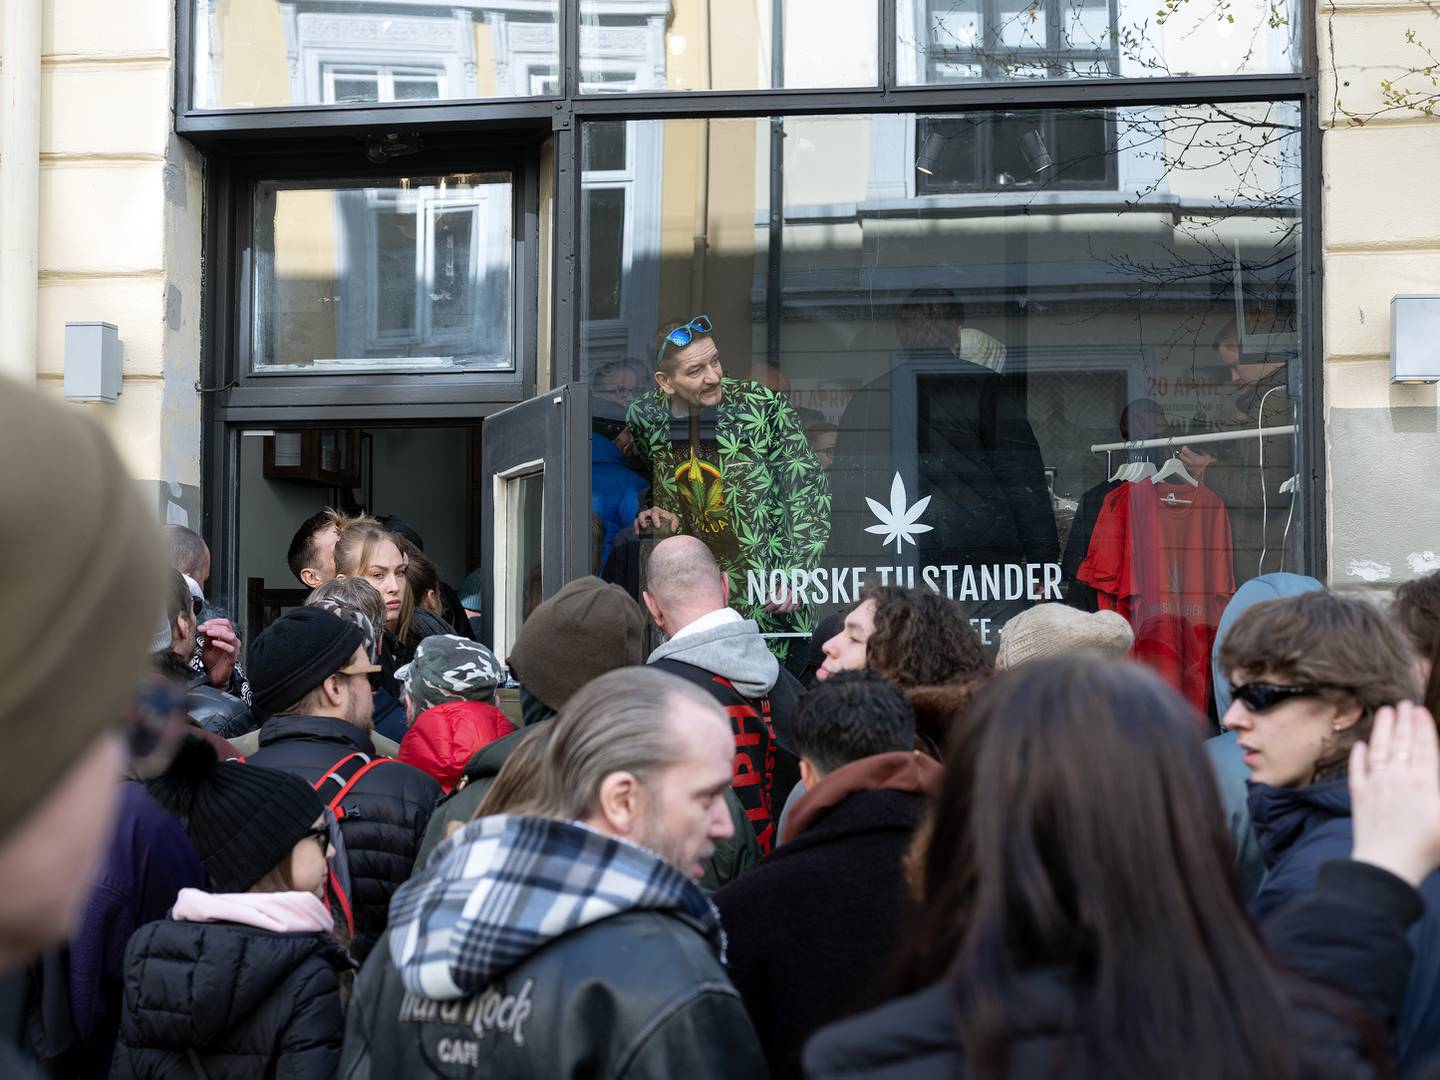 Alliansen for rettighetsorientert ruspolitikk (AROD), åpnet cannabis-kafé på Bislett som et stunt. Kalte kafeen for "Norske tilstander".